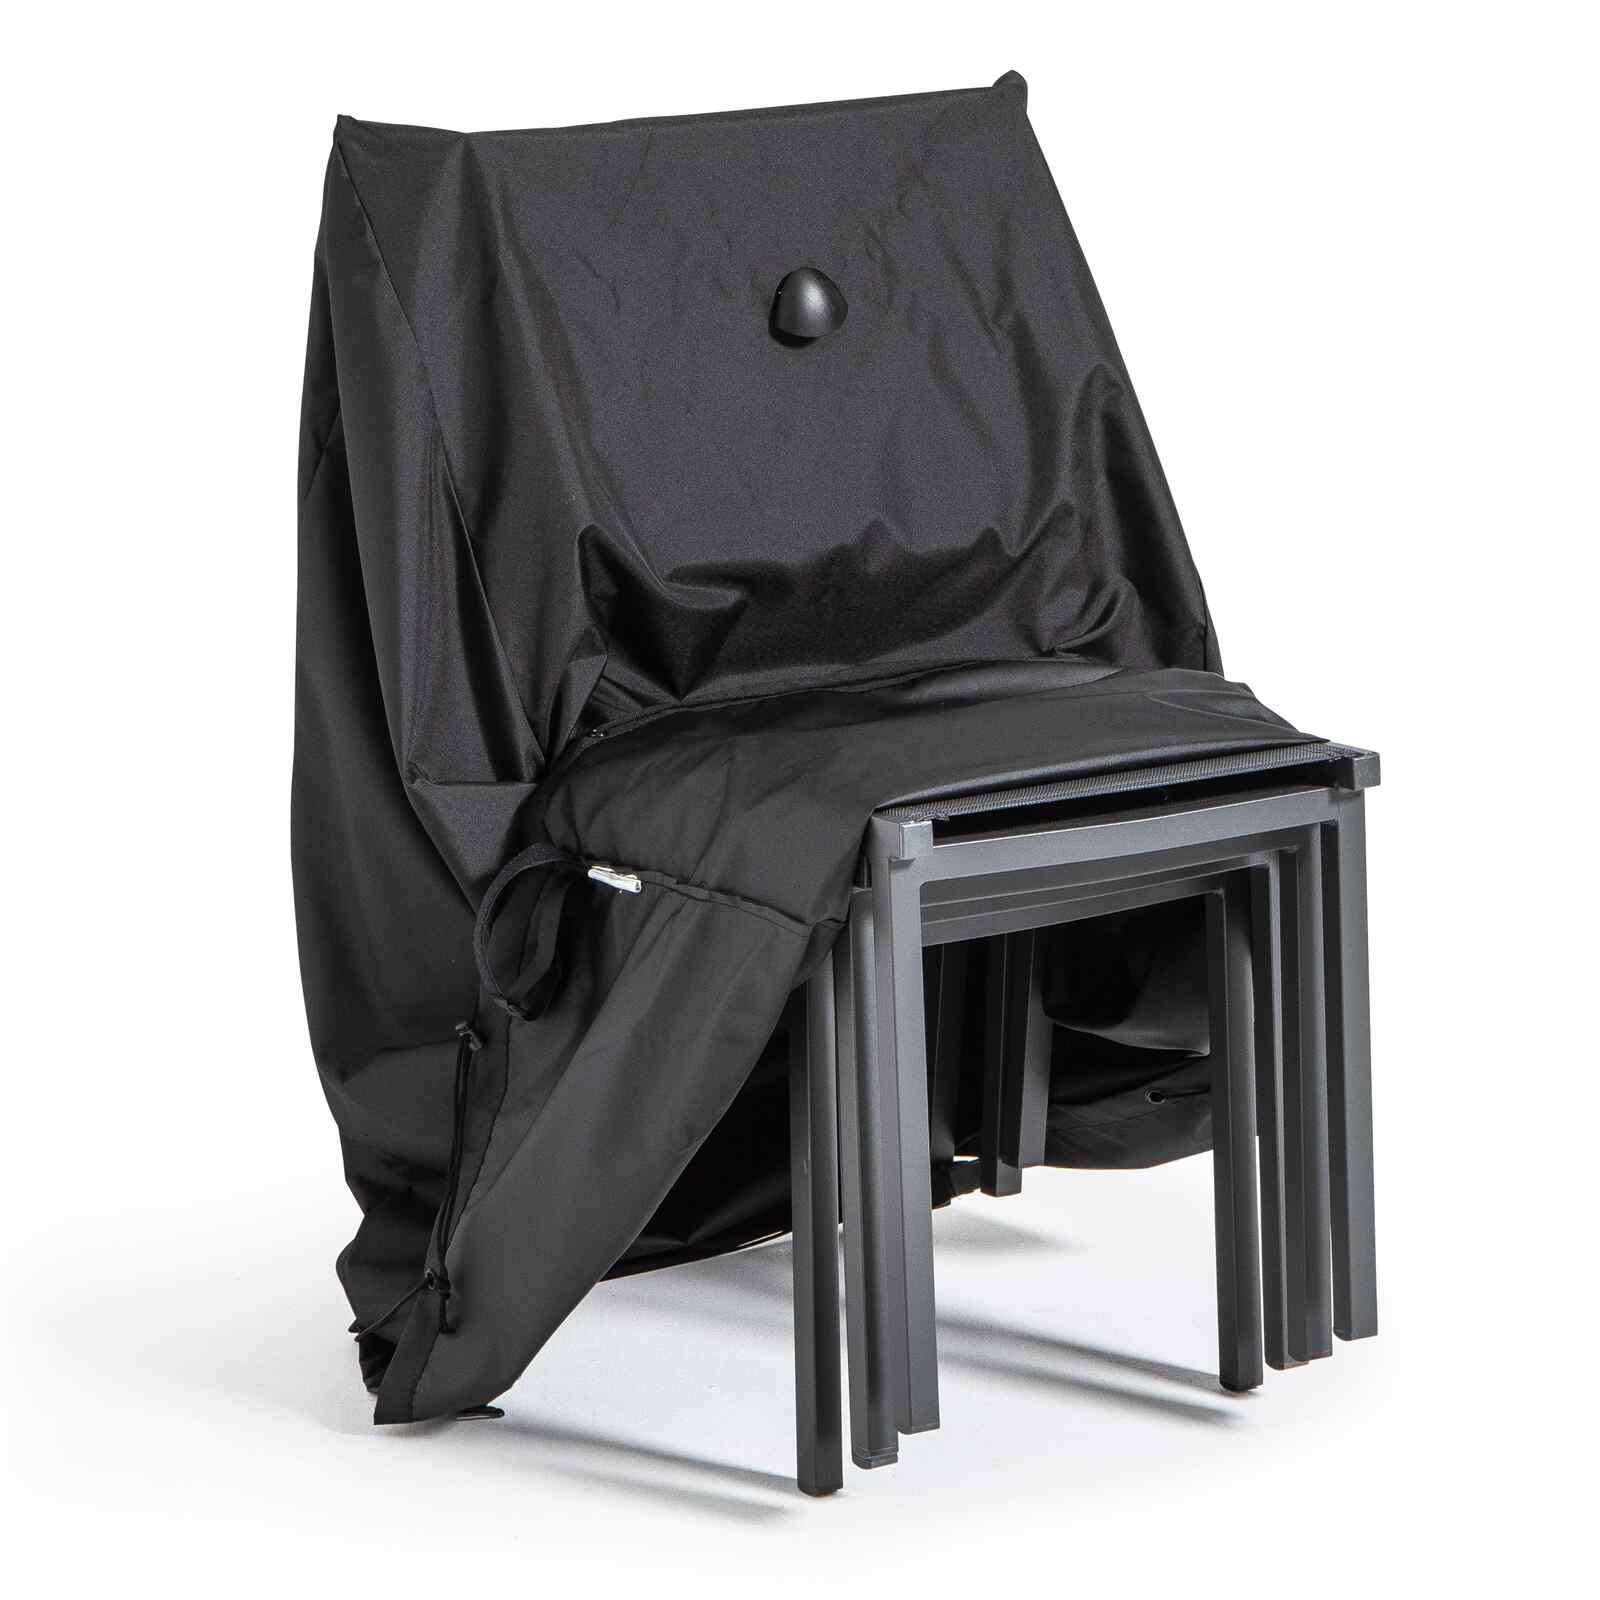 Housse de protection pour fauteuil de jardin - Housse de